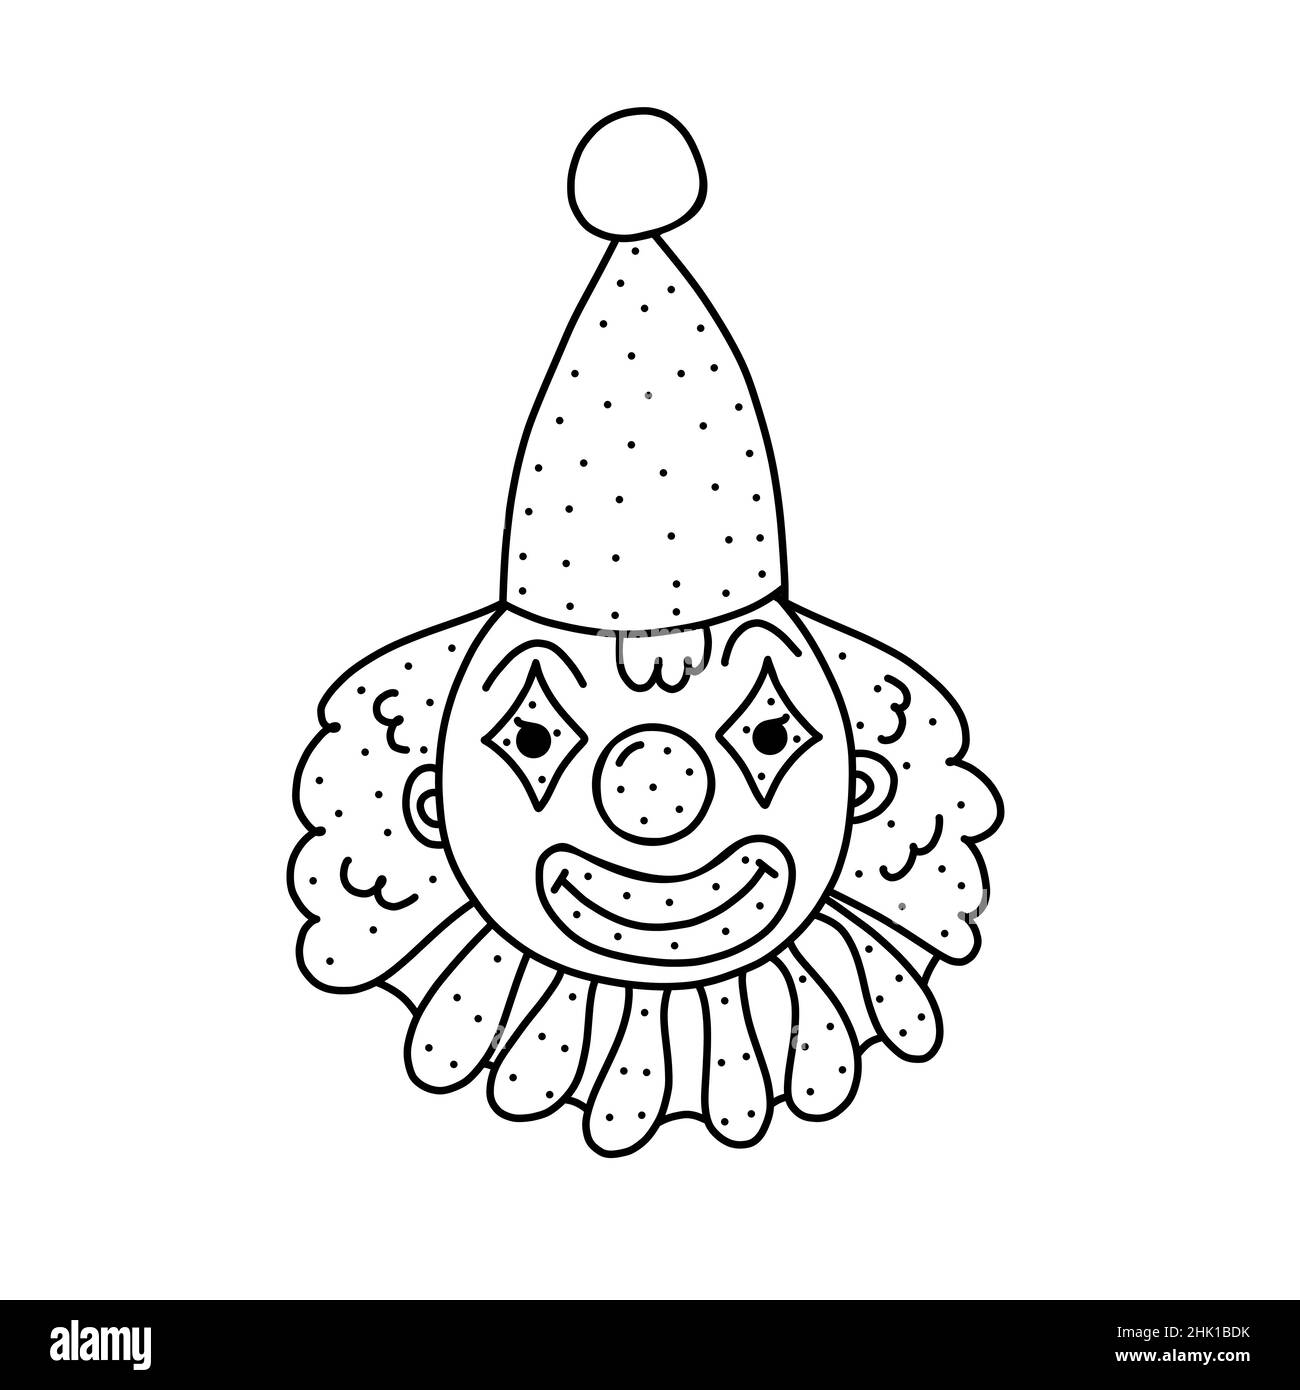 Handgezeichnete Vektordarstellung eines niedlichen Zirkus-Clowns im Doodle-Stil. Niedliche Illustration einer Clown-Ikone auf weißem Hintergrund Stock Vektor